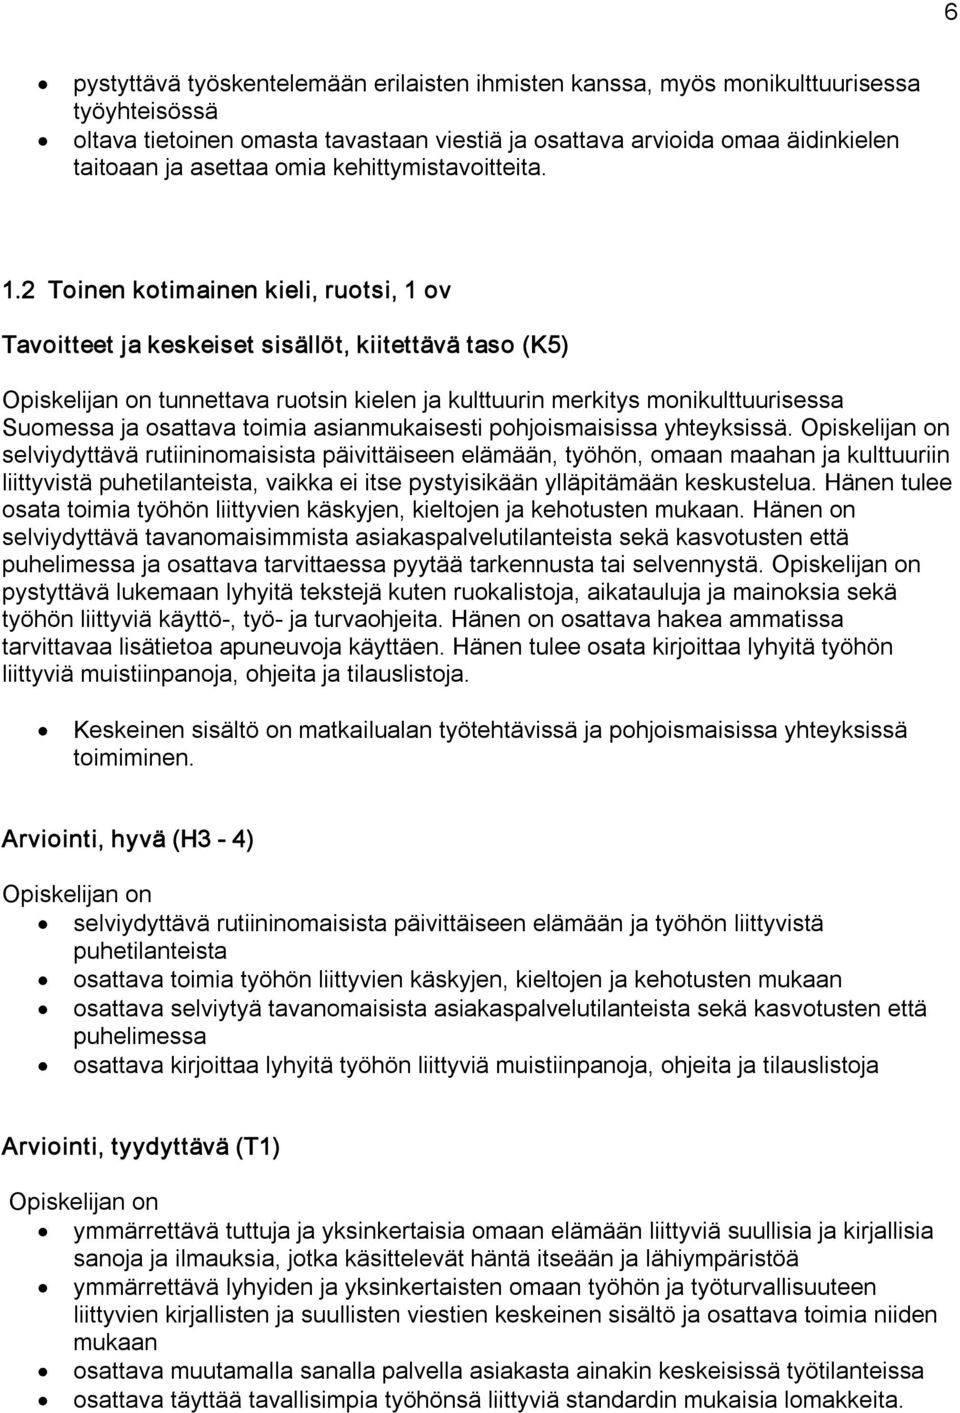 2 Toinen kotimainen kieli, ruotsi, 1 ov Tavoitteet ja keskeiset sisällöt, kiitettävä taso (K5) tunnettava ruotsin kielen ja kulttuurin merkitys monikulttuurisessa Suomessa ja osattava toimia